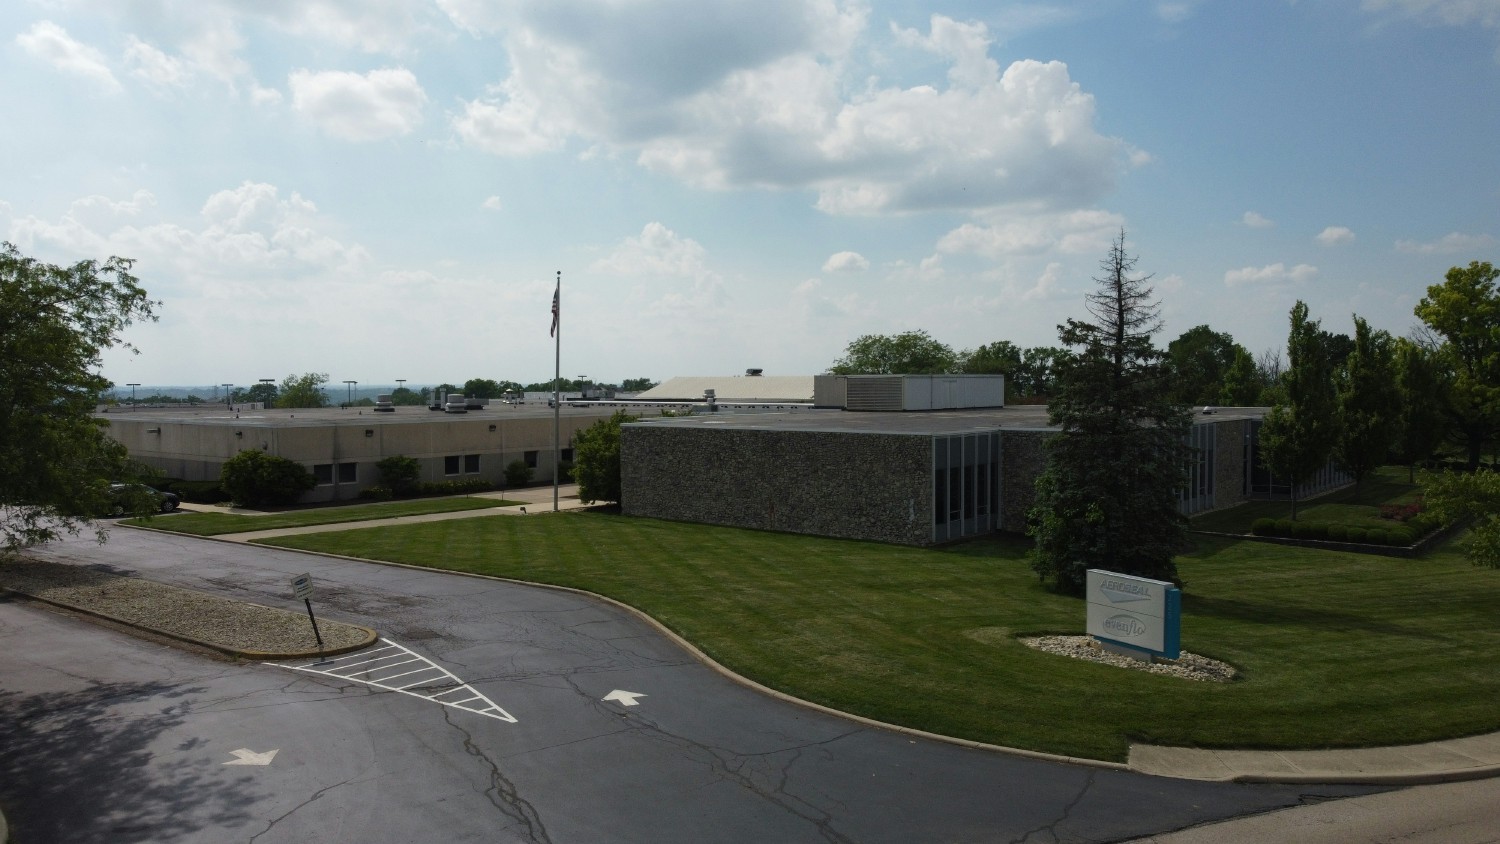 Aeroseal Headquarters Facility